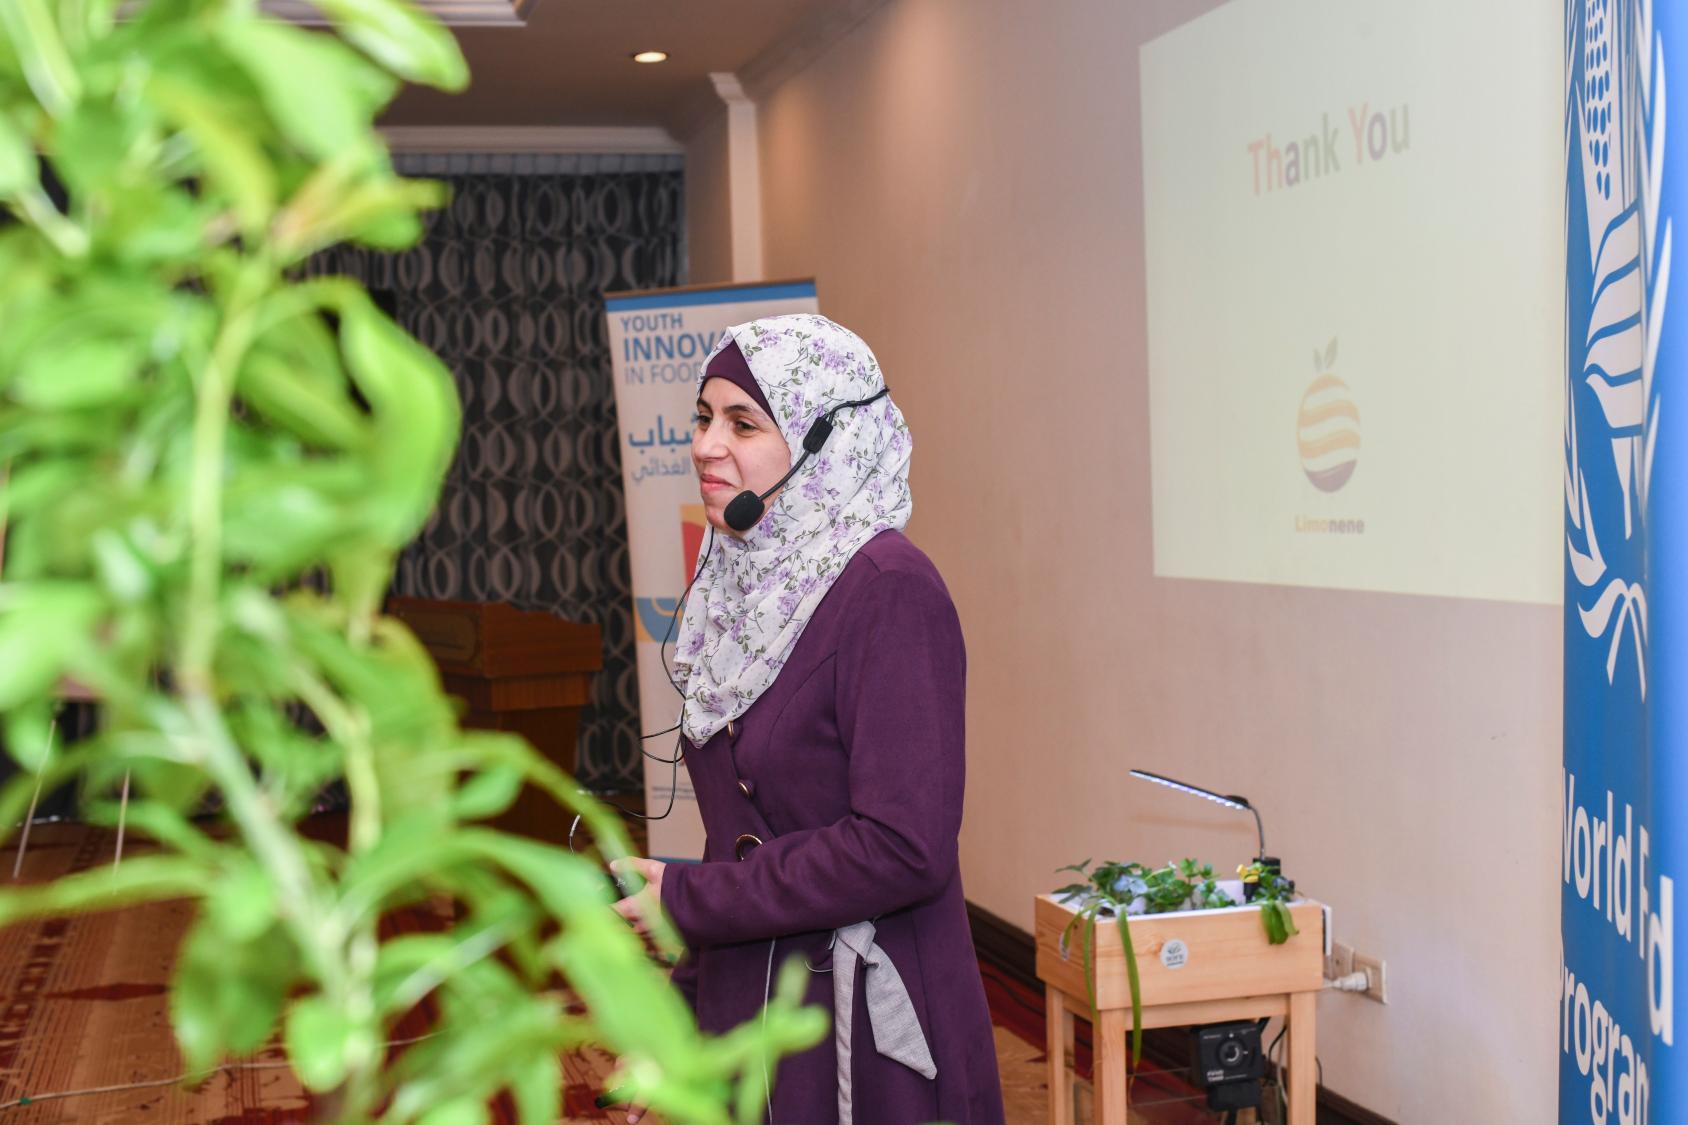 آلاء ثلجي، مشاركة في حدث ابتكار الشباب في مجال الأمن الغذائي الذي نظم من قبل اليونيسف وبرنامج الأغذية العالمي في الأردن.